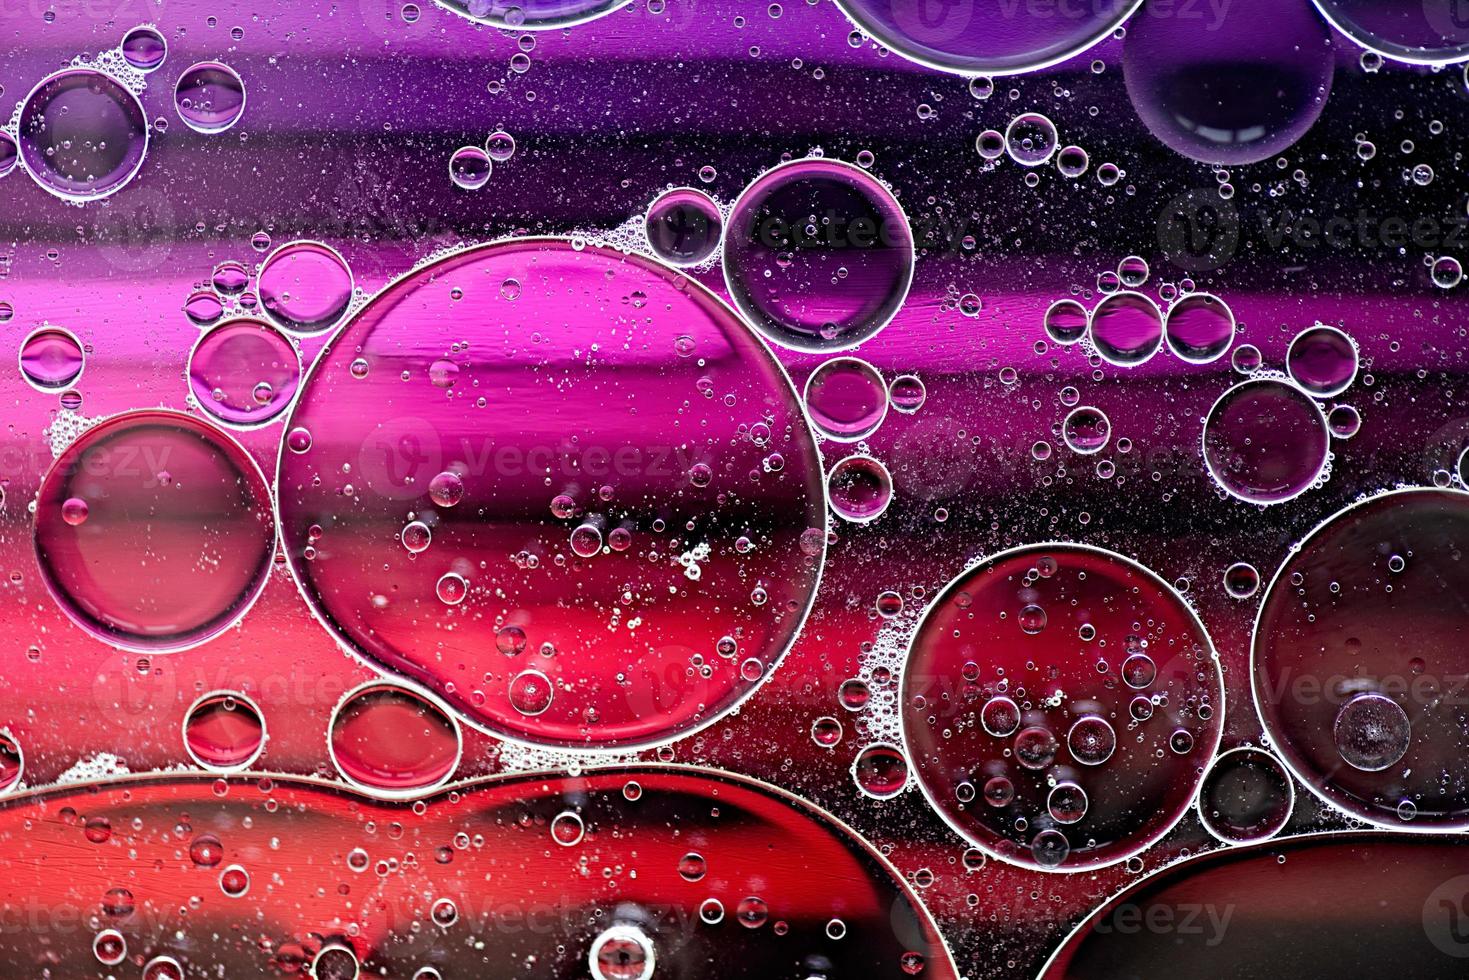 motif abstrait rose et violet fait avec des bulles d'huile sur l'eau en mouvement photo